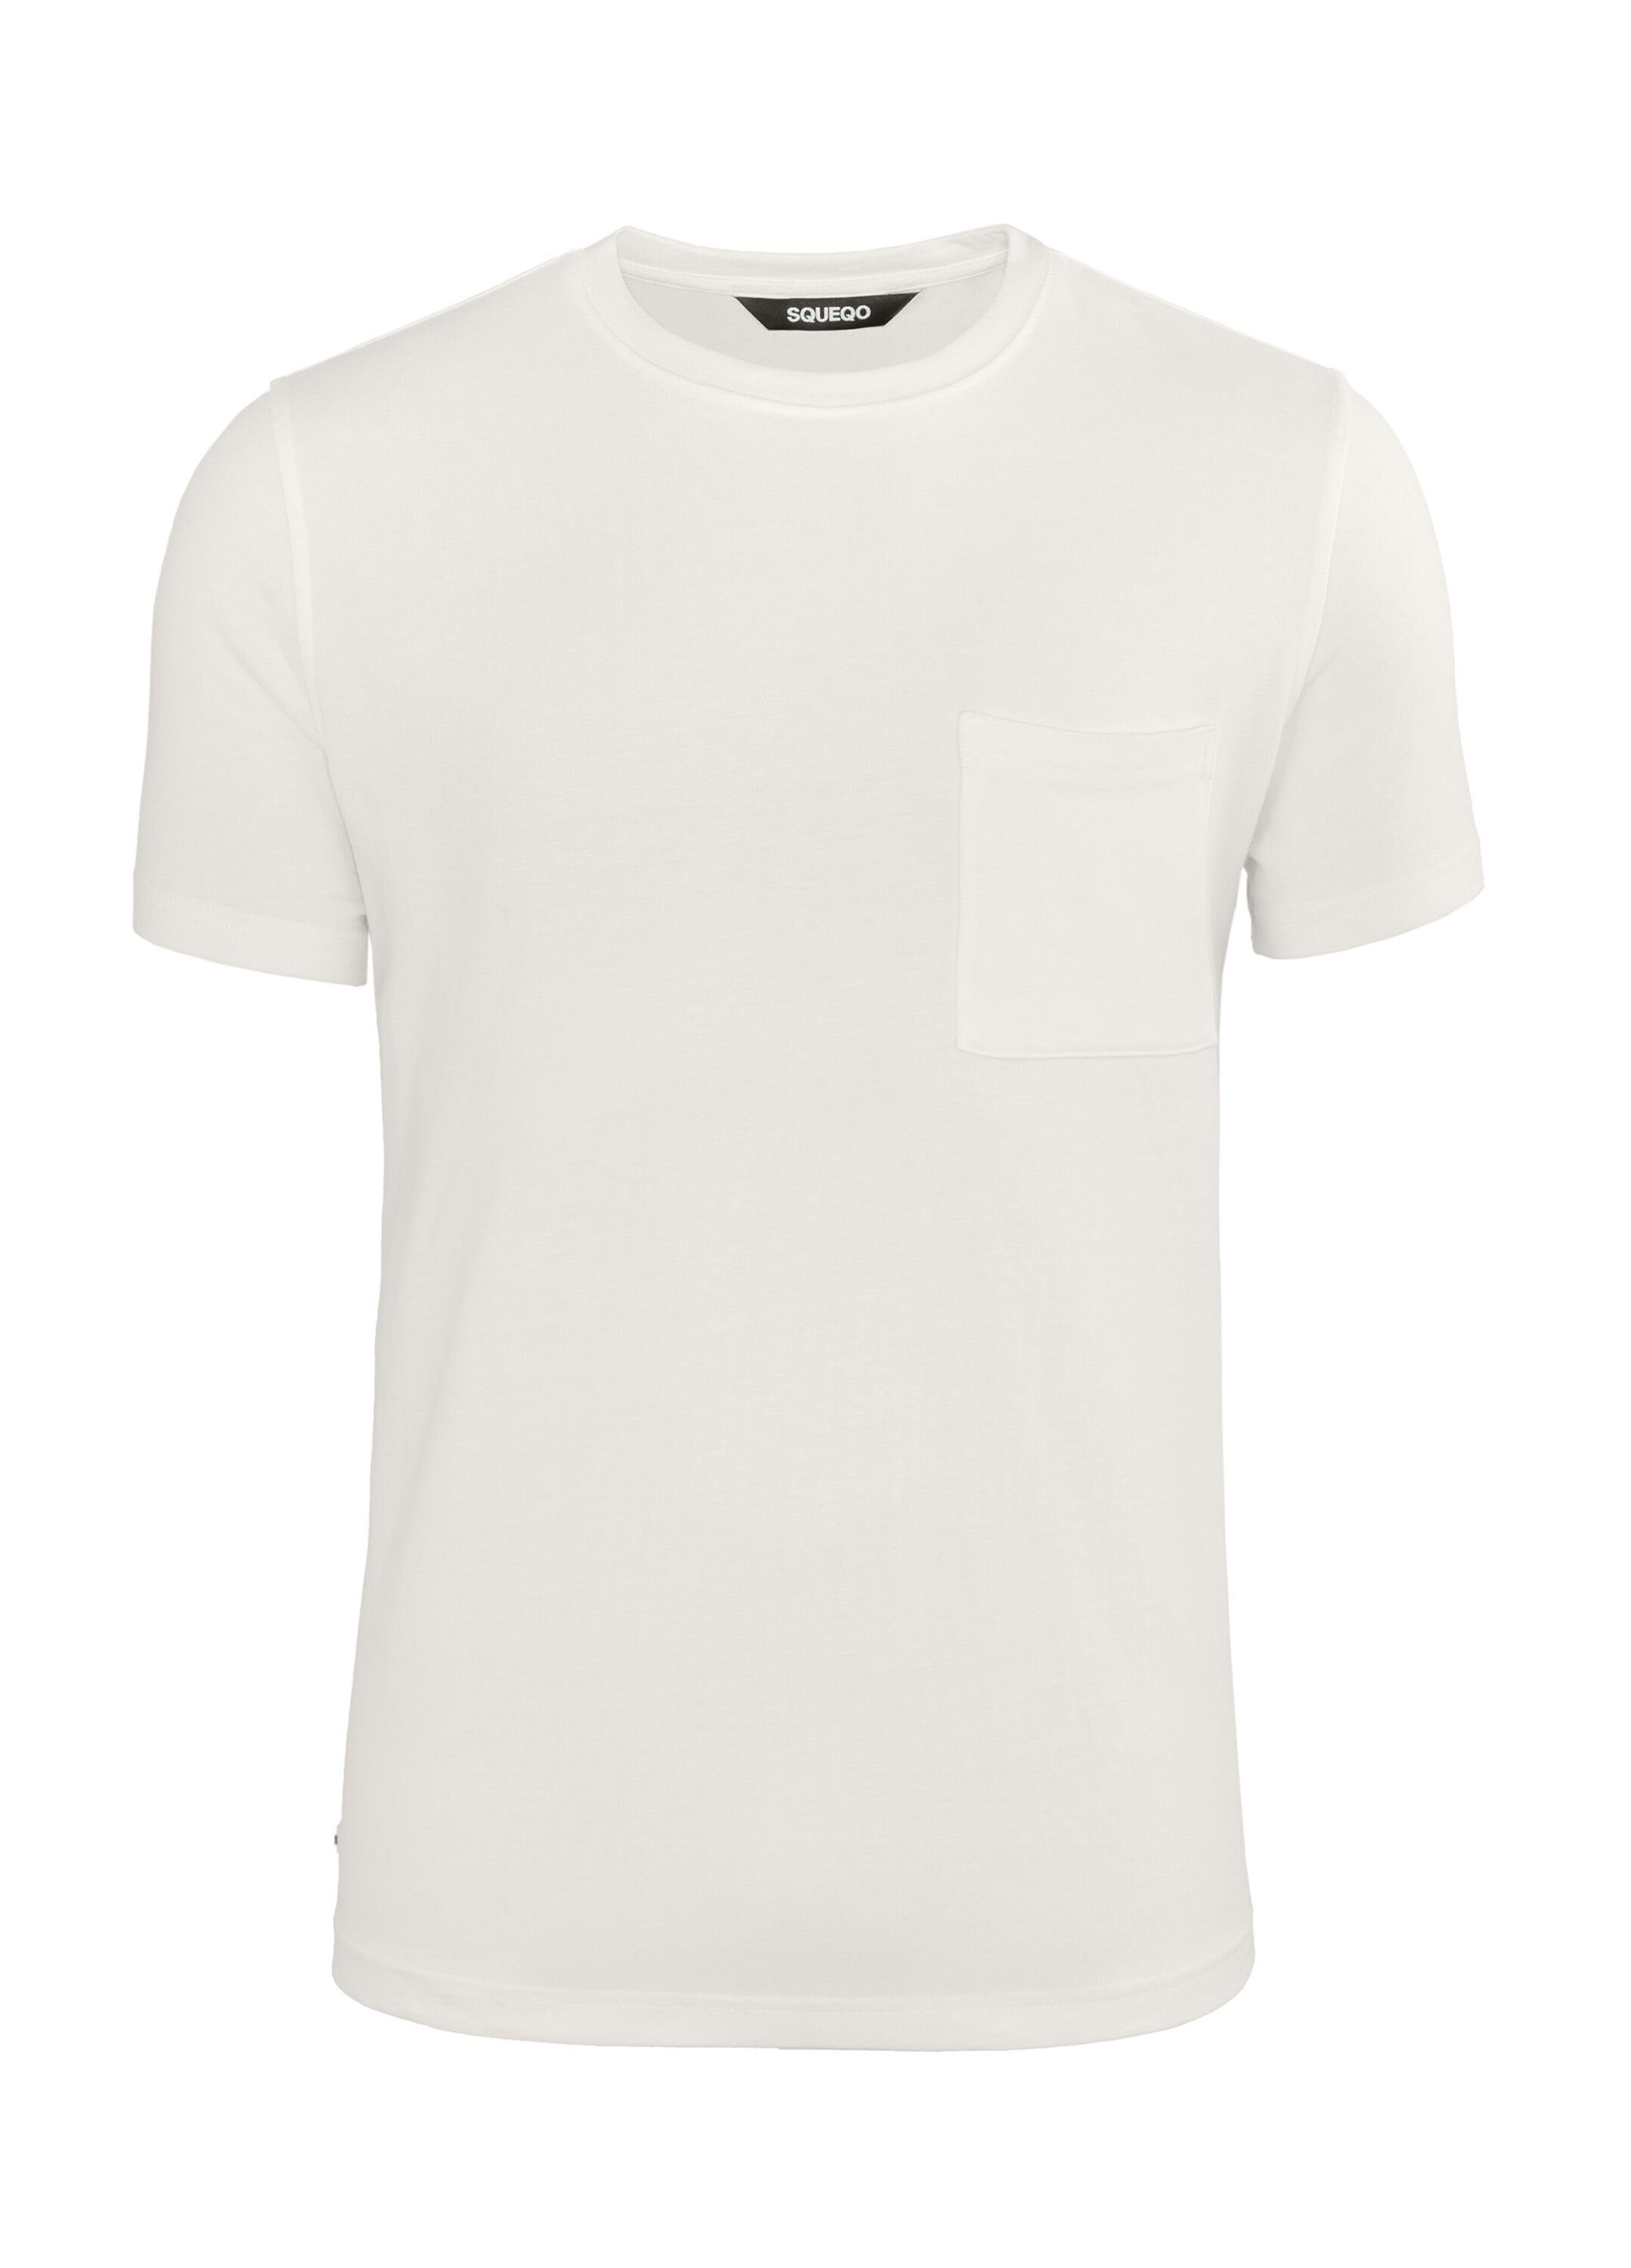 SQUEQO T-Shirt mit geripptem Rundhalsausschnitt White Off